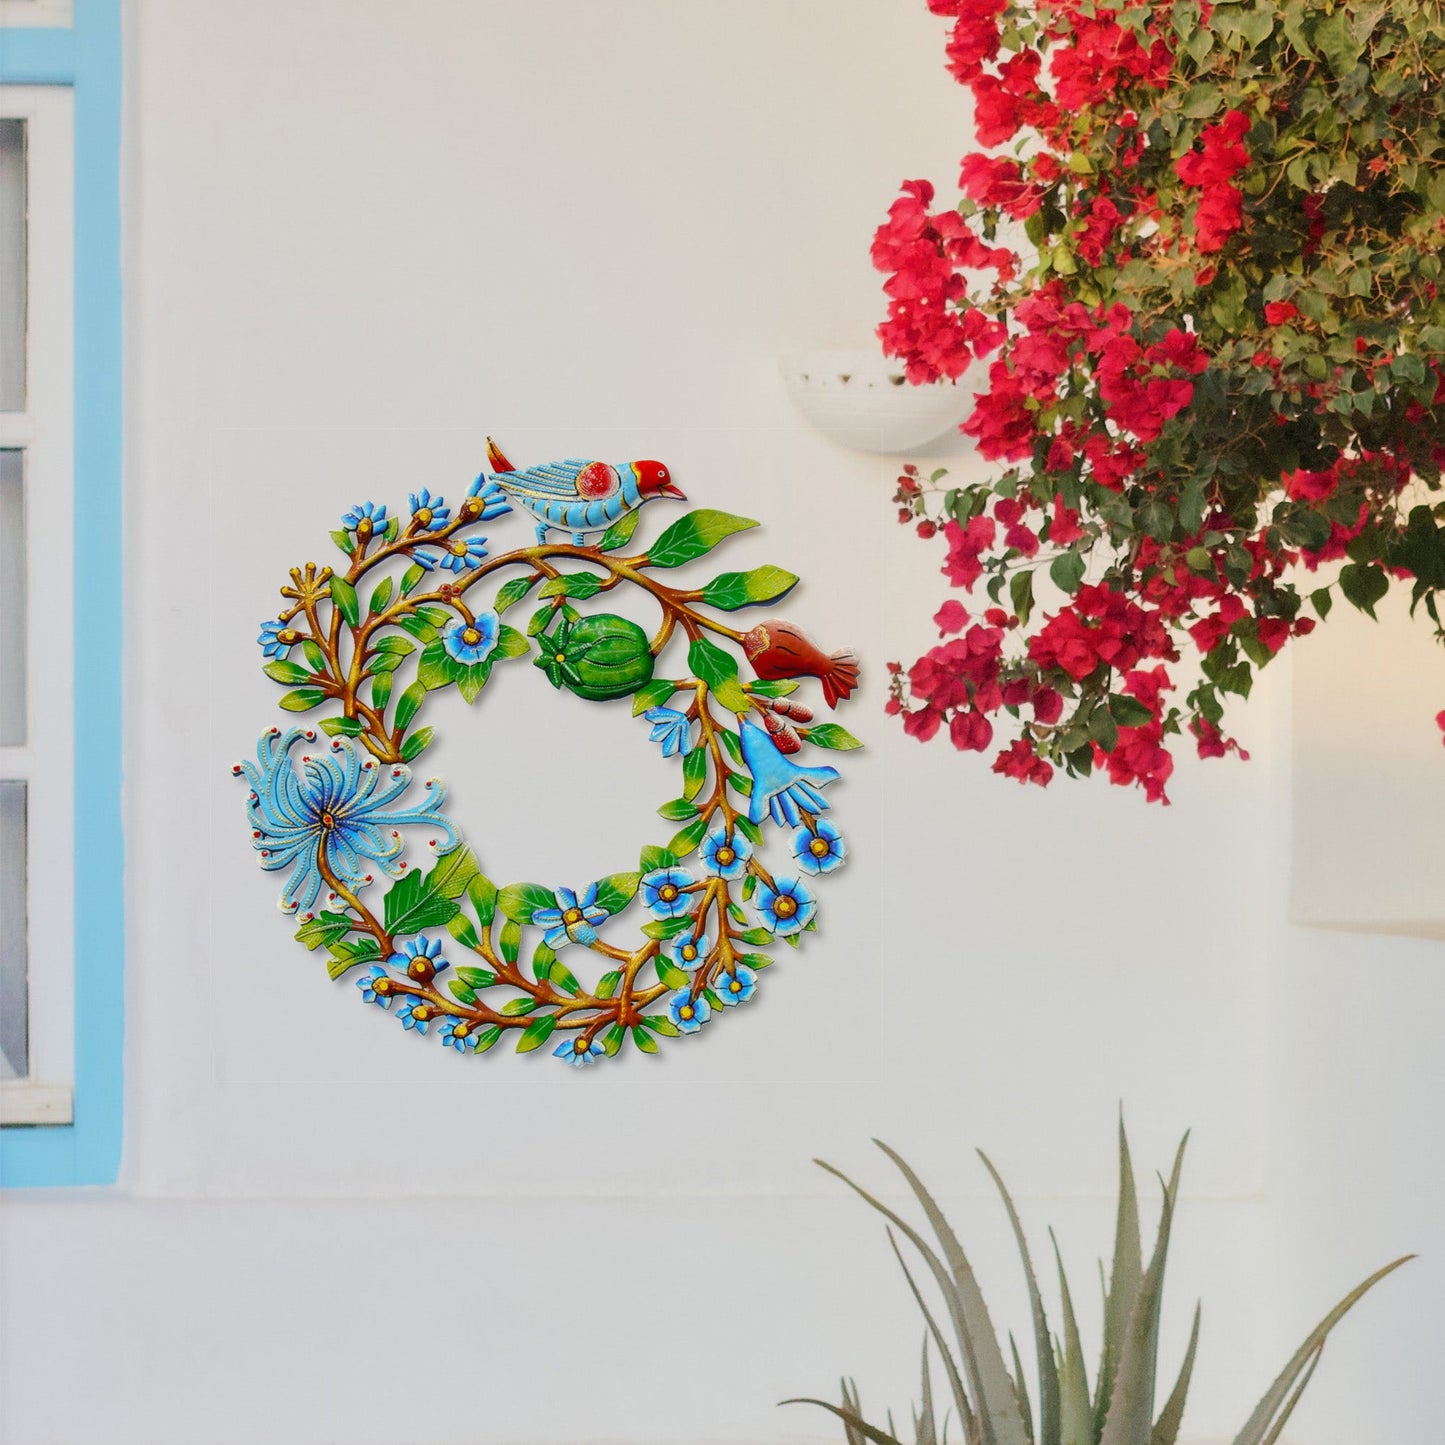 blue-bird-door-wreath-haitian-metal-drum-wall-art